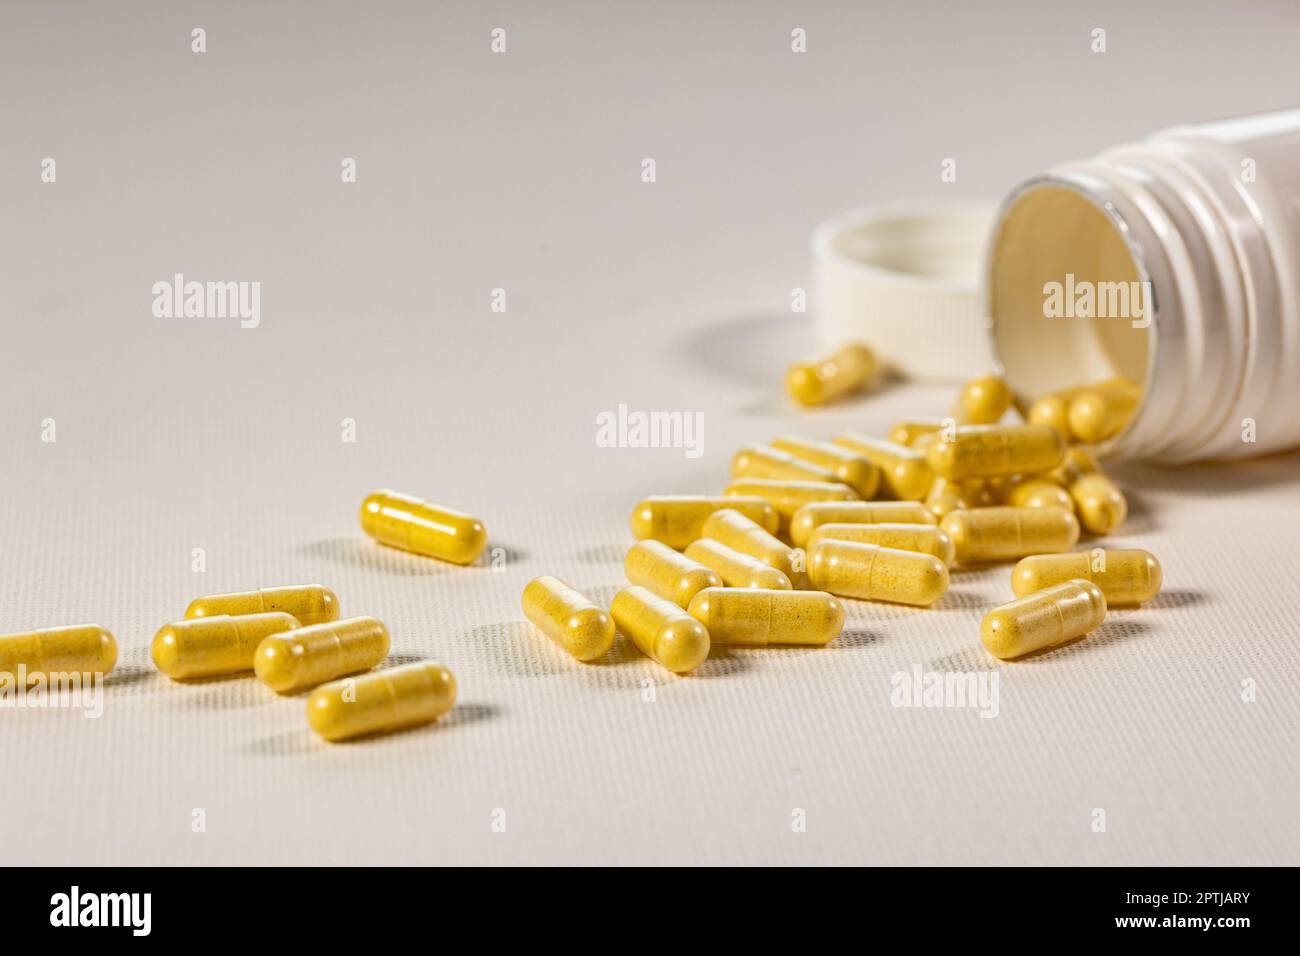 Pilules jaunes pour usage oral sur fond blanc. Médicaments sous forme de comprimés dans un pot en plastique blanc. Concept de soins de santé et de médecine Banque D'Images